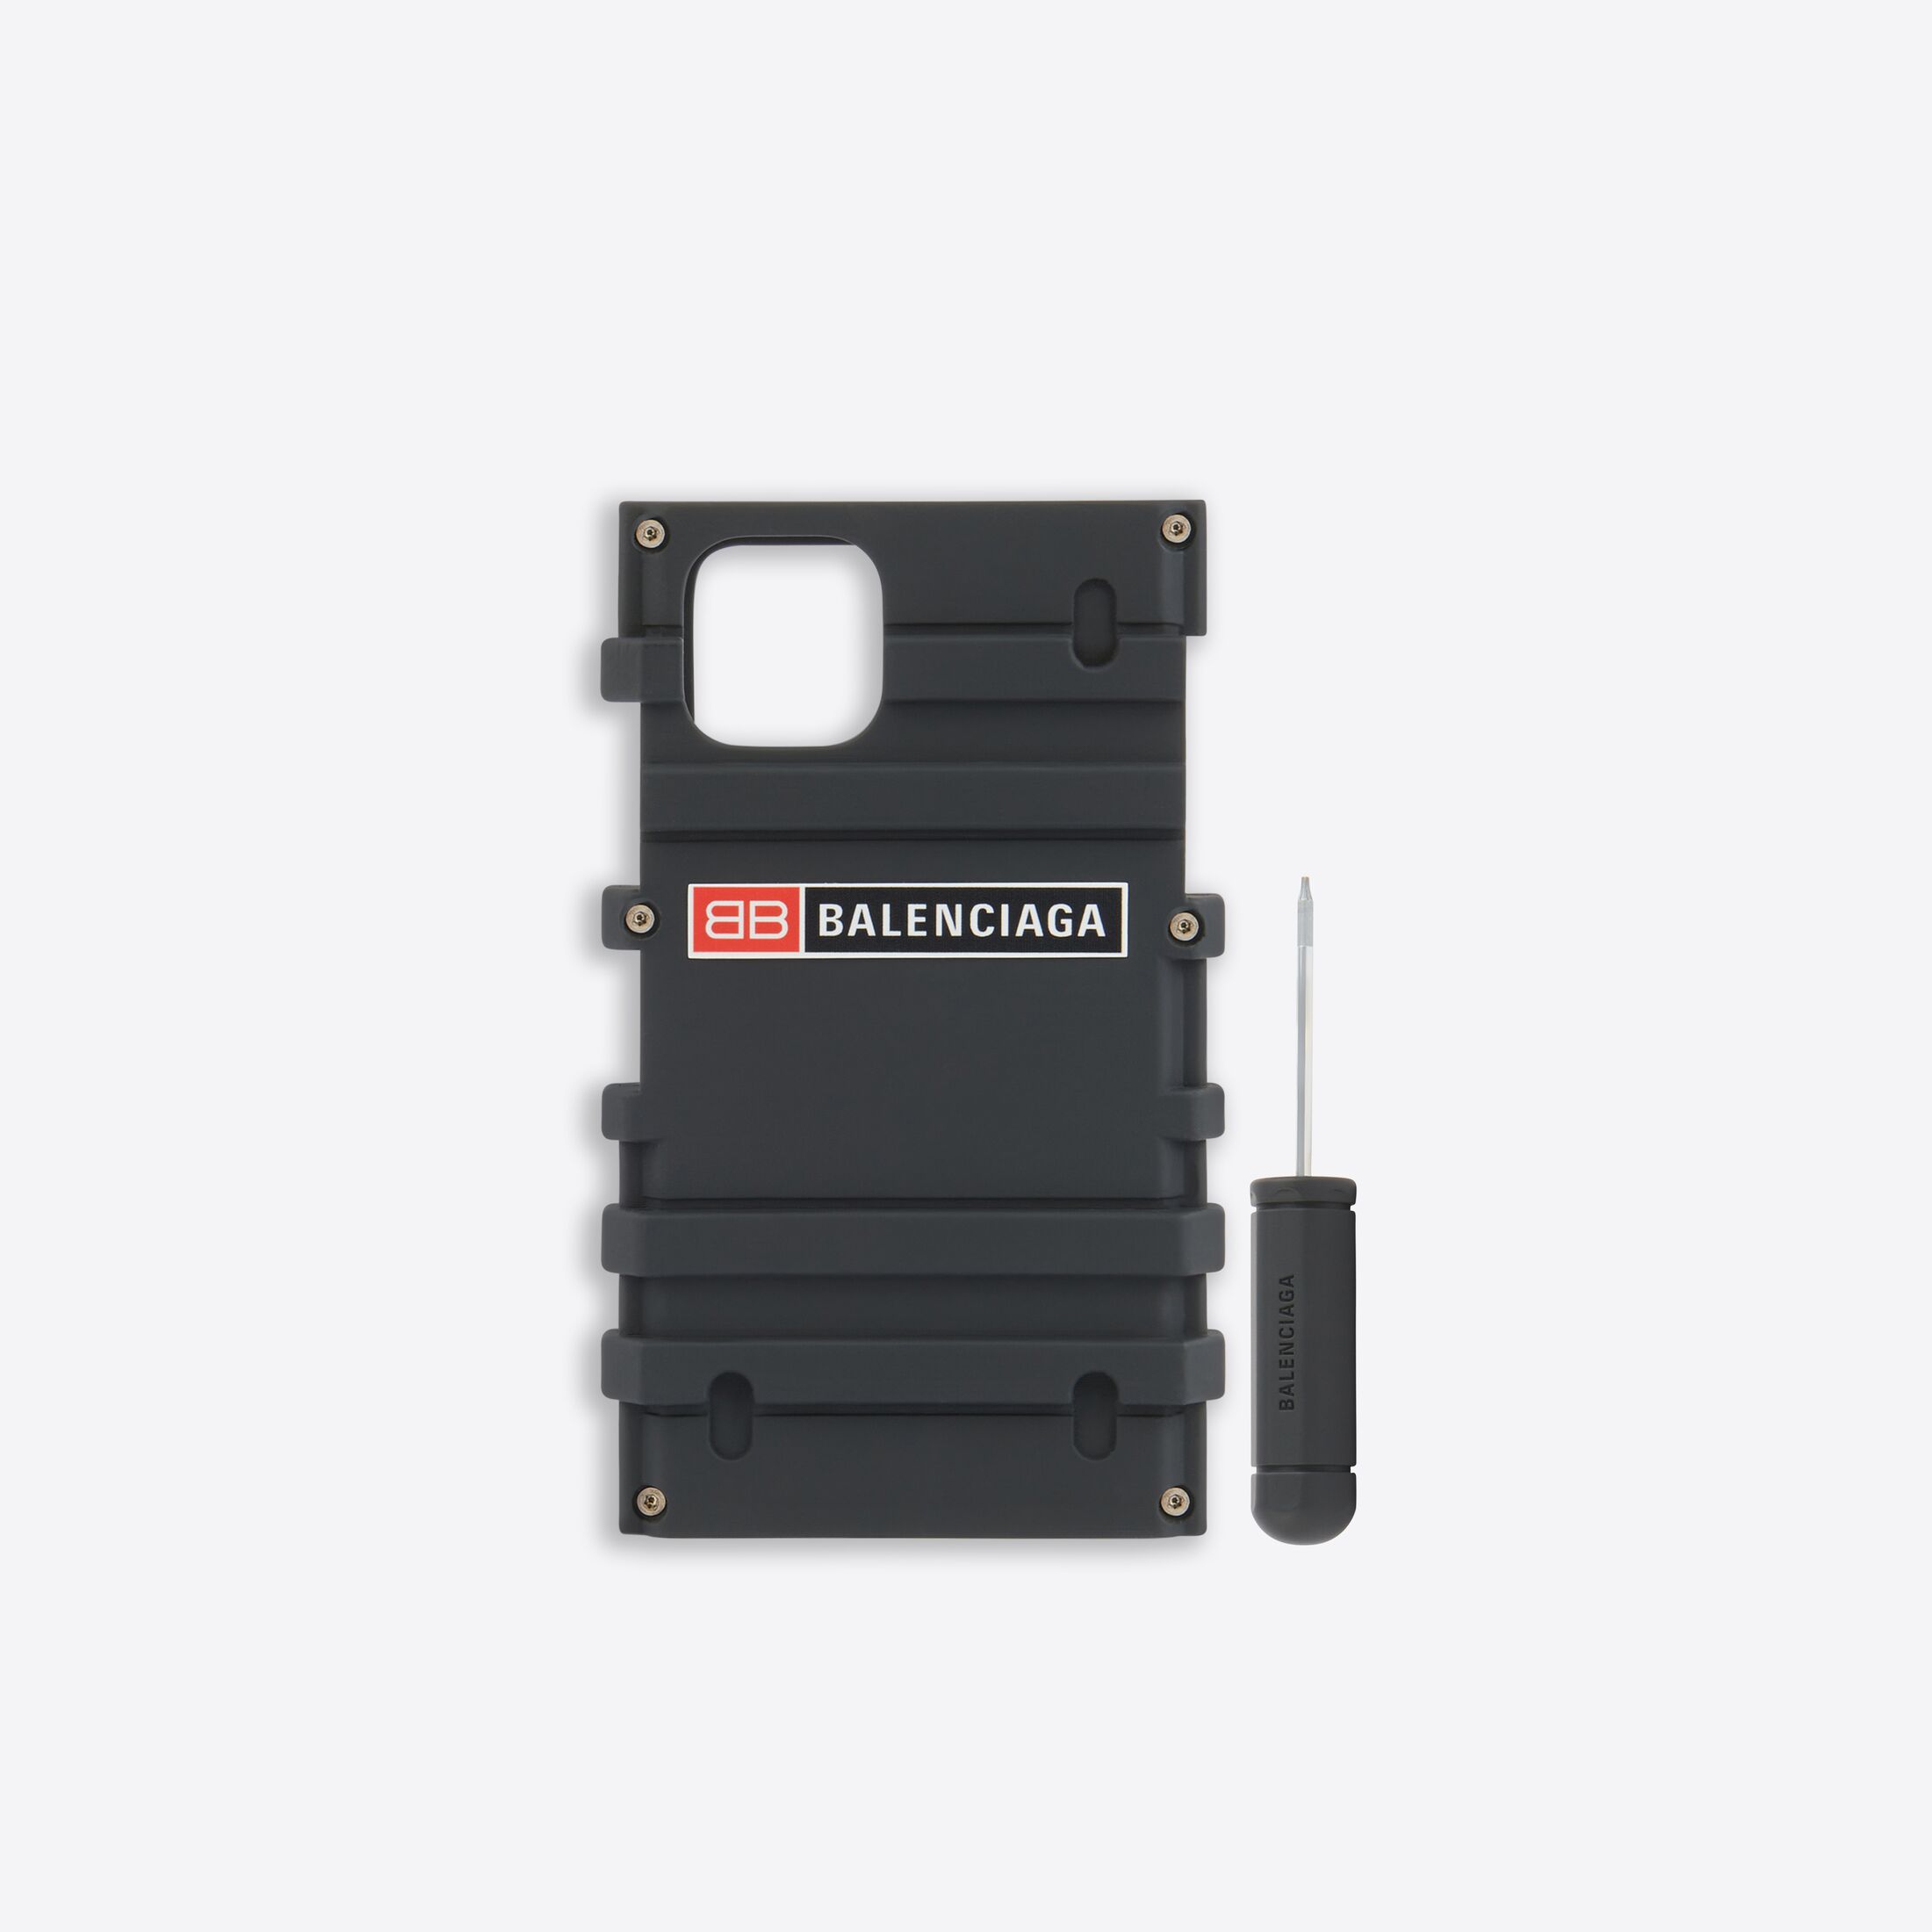 Balenciaga выпустила чехол для iPhone 12 в виде ящика для инструментов. Отвертка в комплекте